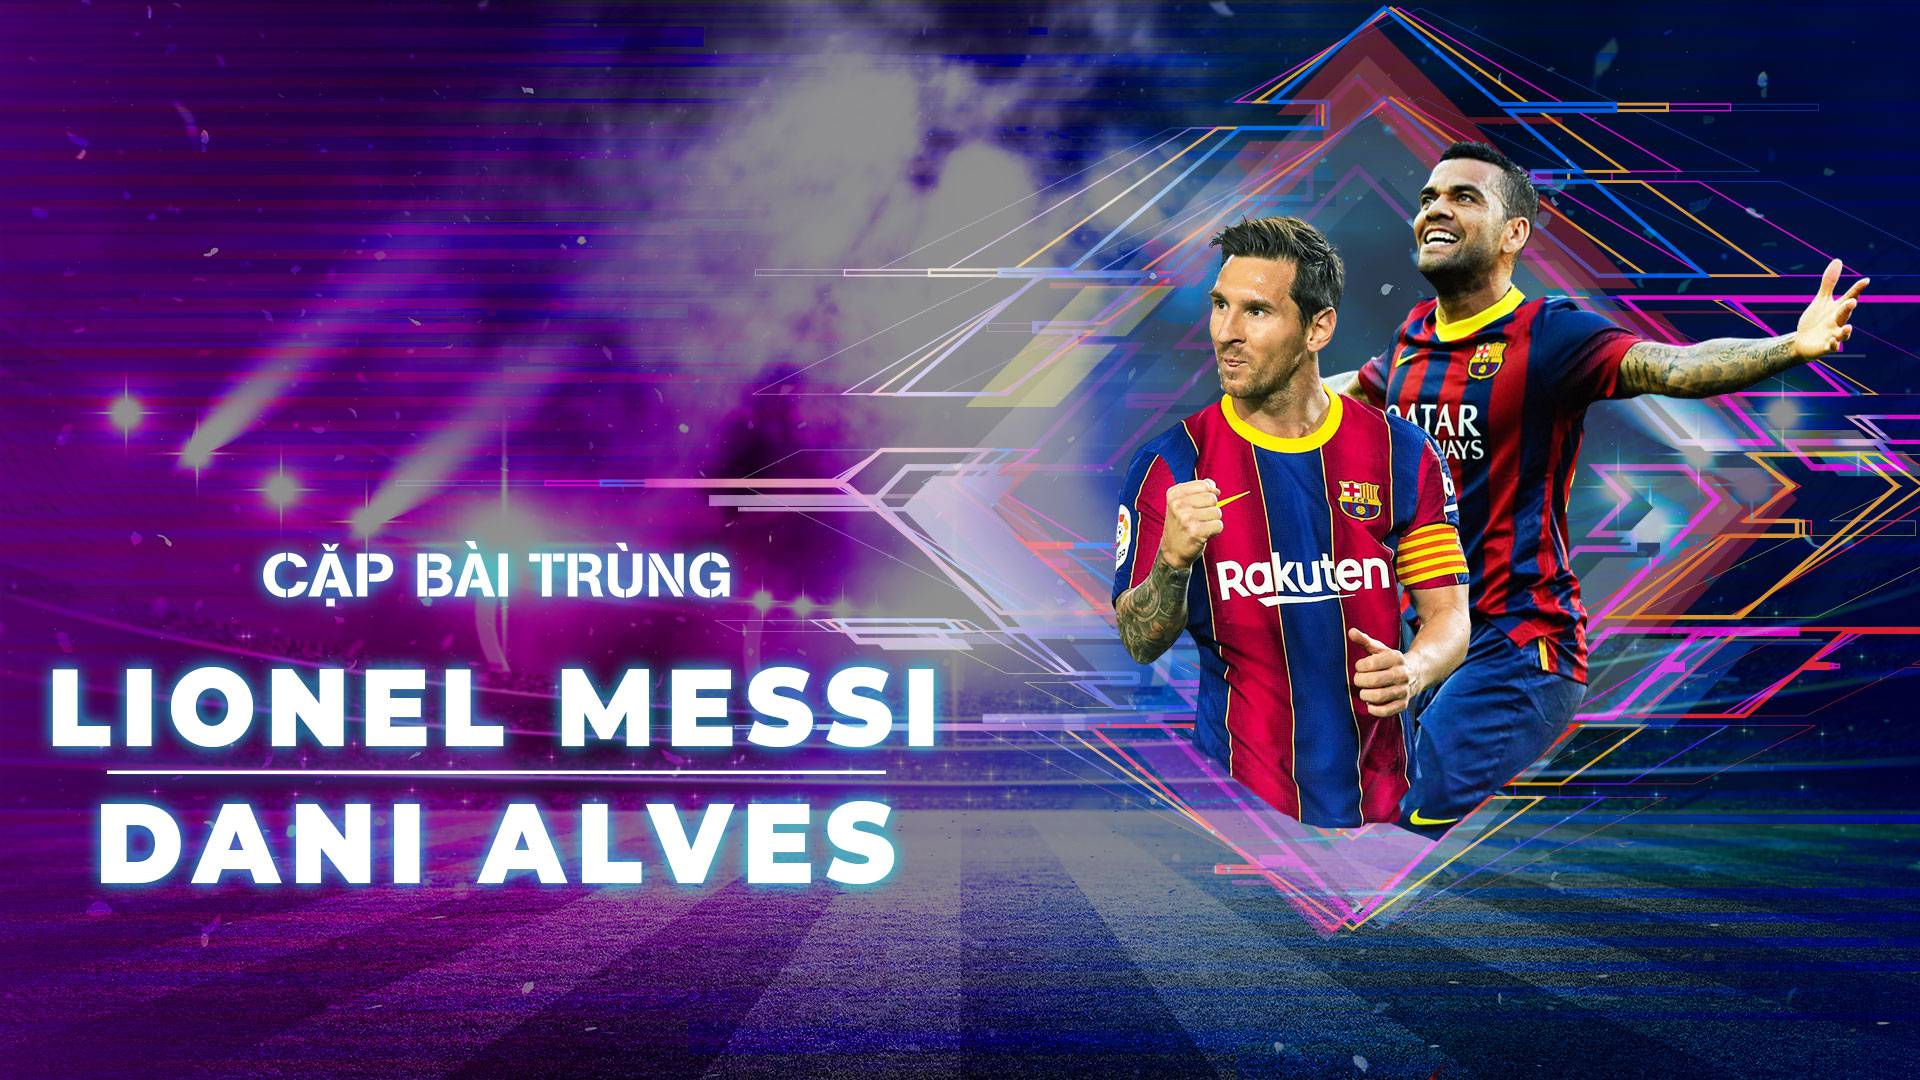 Nếu bạn là một fan của cặp đôi sát thủ chống lại đối thủ, hãy xem cặp bài trùng Messi-Dani Alves với sự kết hợp siêu khéo léo giữa hai cầu thủ siêu sao này. Sự hòa trộn giữa kỹ năng và sự nhanh nhẹn sẽ làm cho bạn muốn xem lại lần nữa!